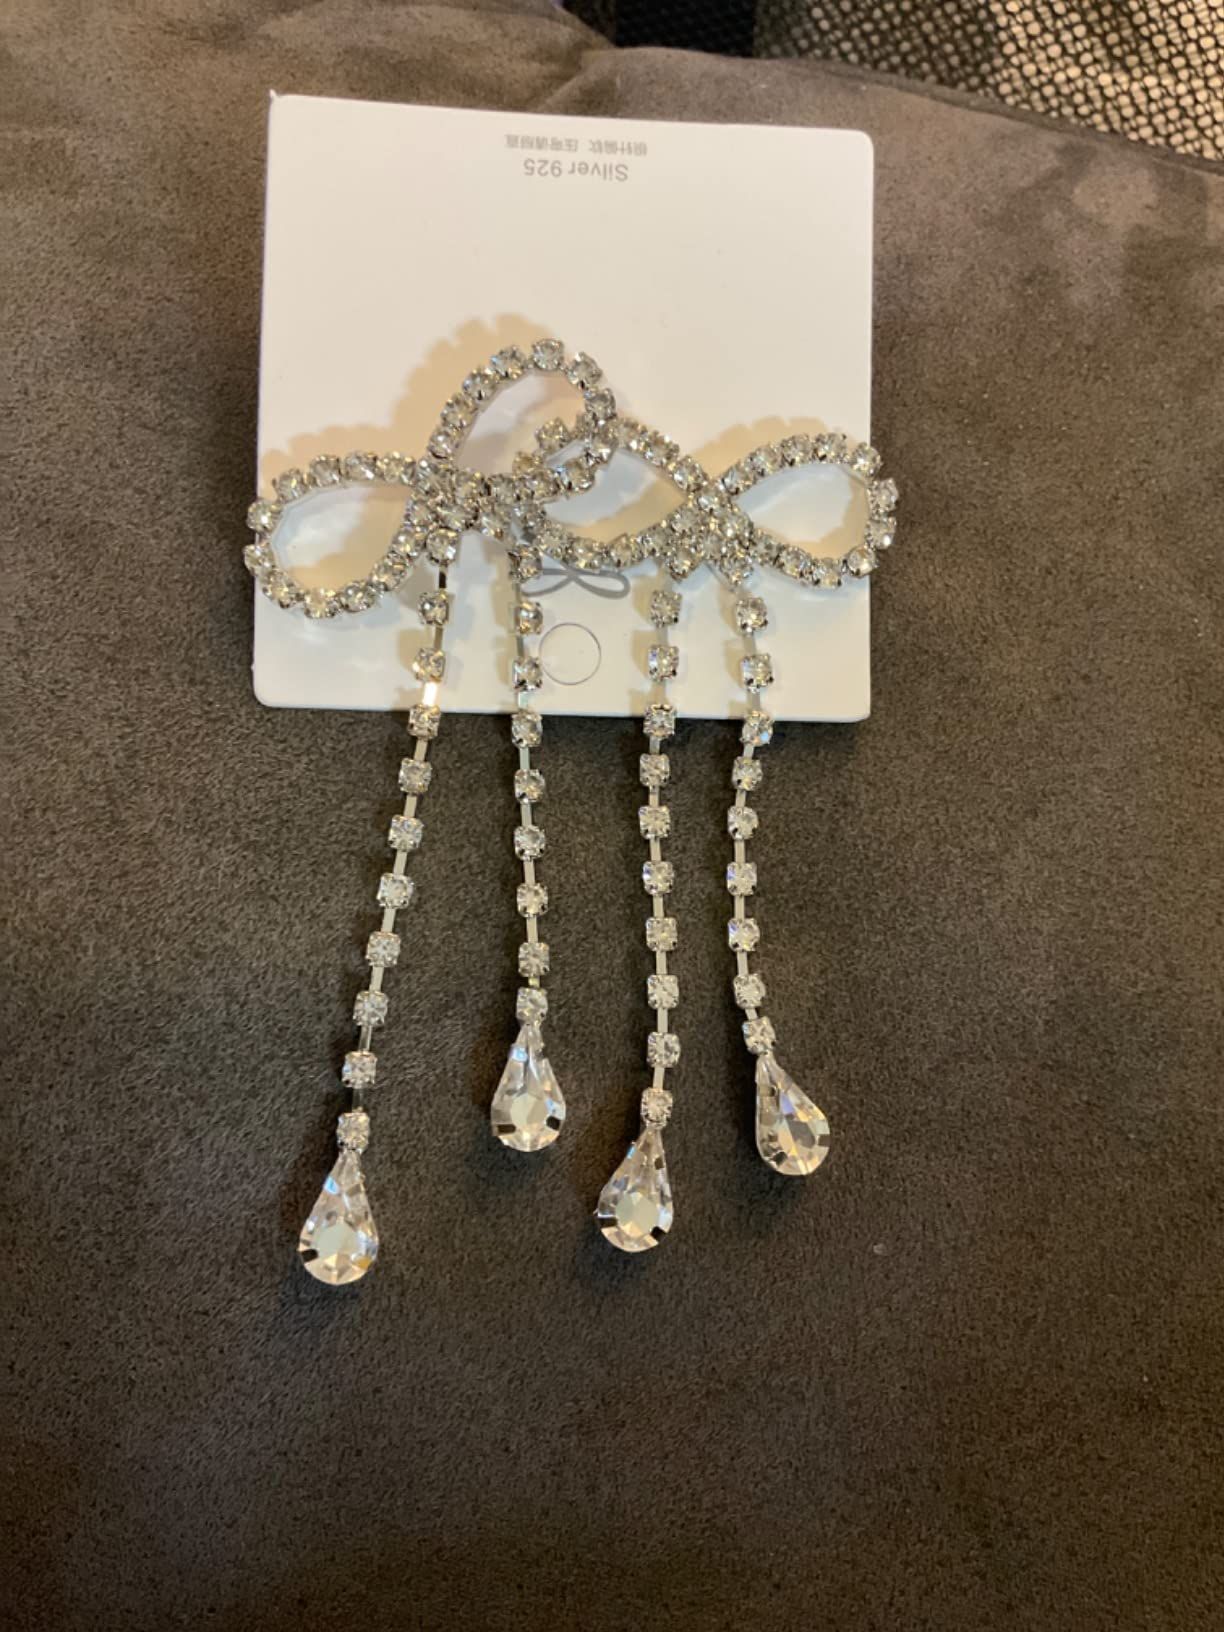 Rhinestones Bow Drop Earrings for Women Girls Silver Crystal Bowknot Tassels Statement Earrings Lightweight Shiny Bar Earrings Set Jewelry | Amazon (US)